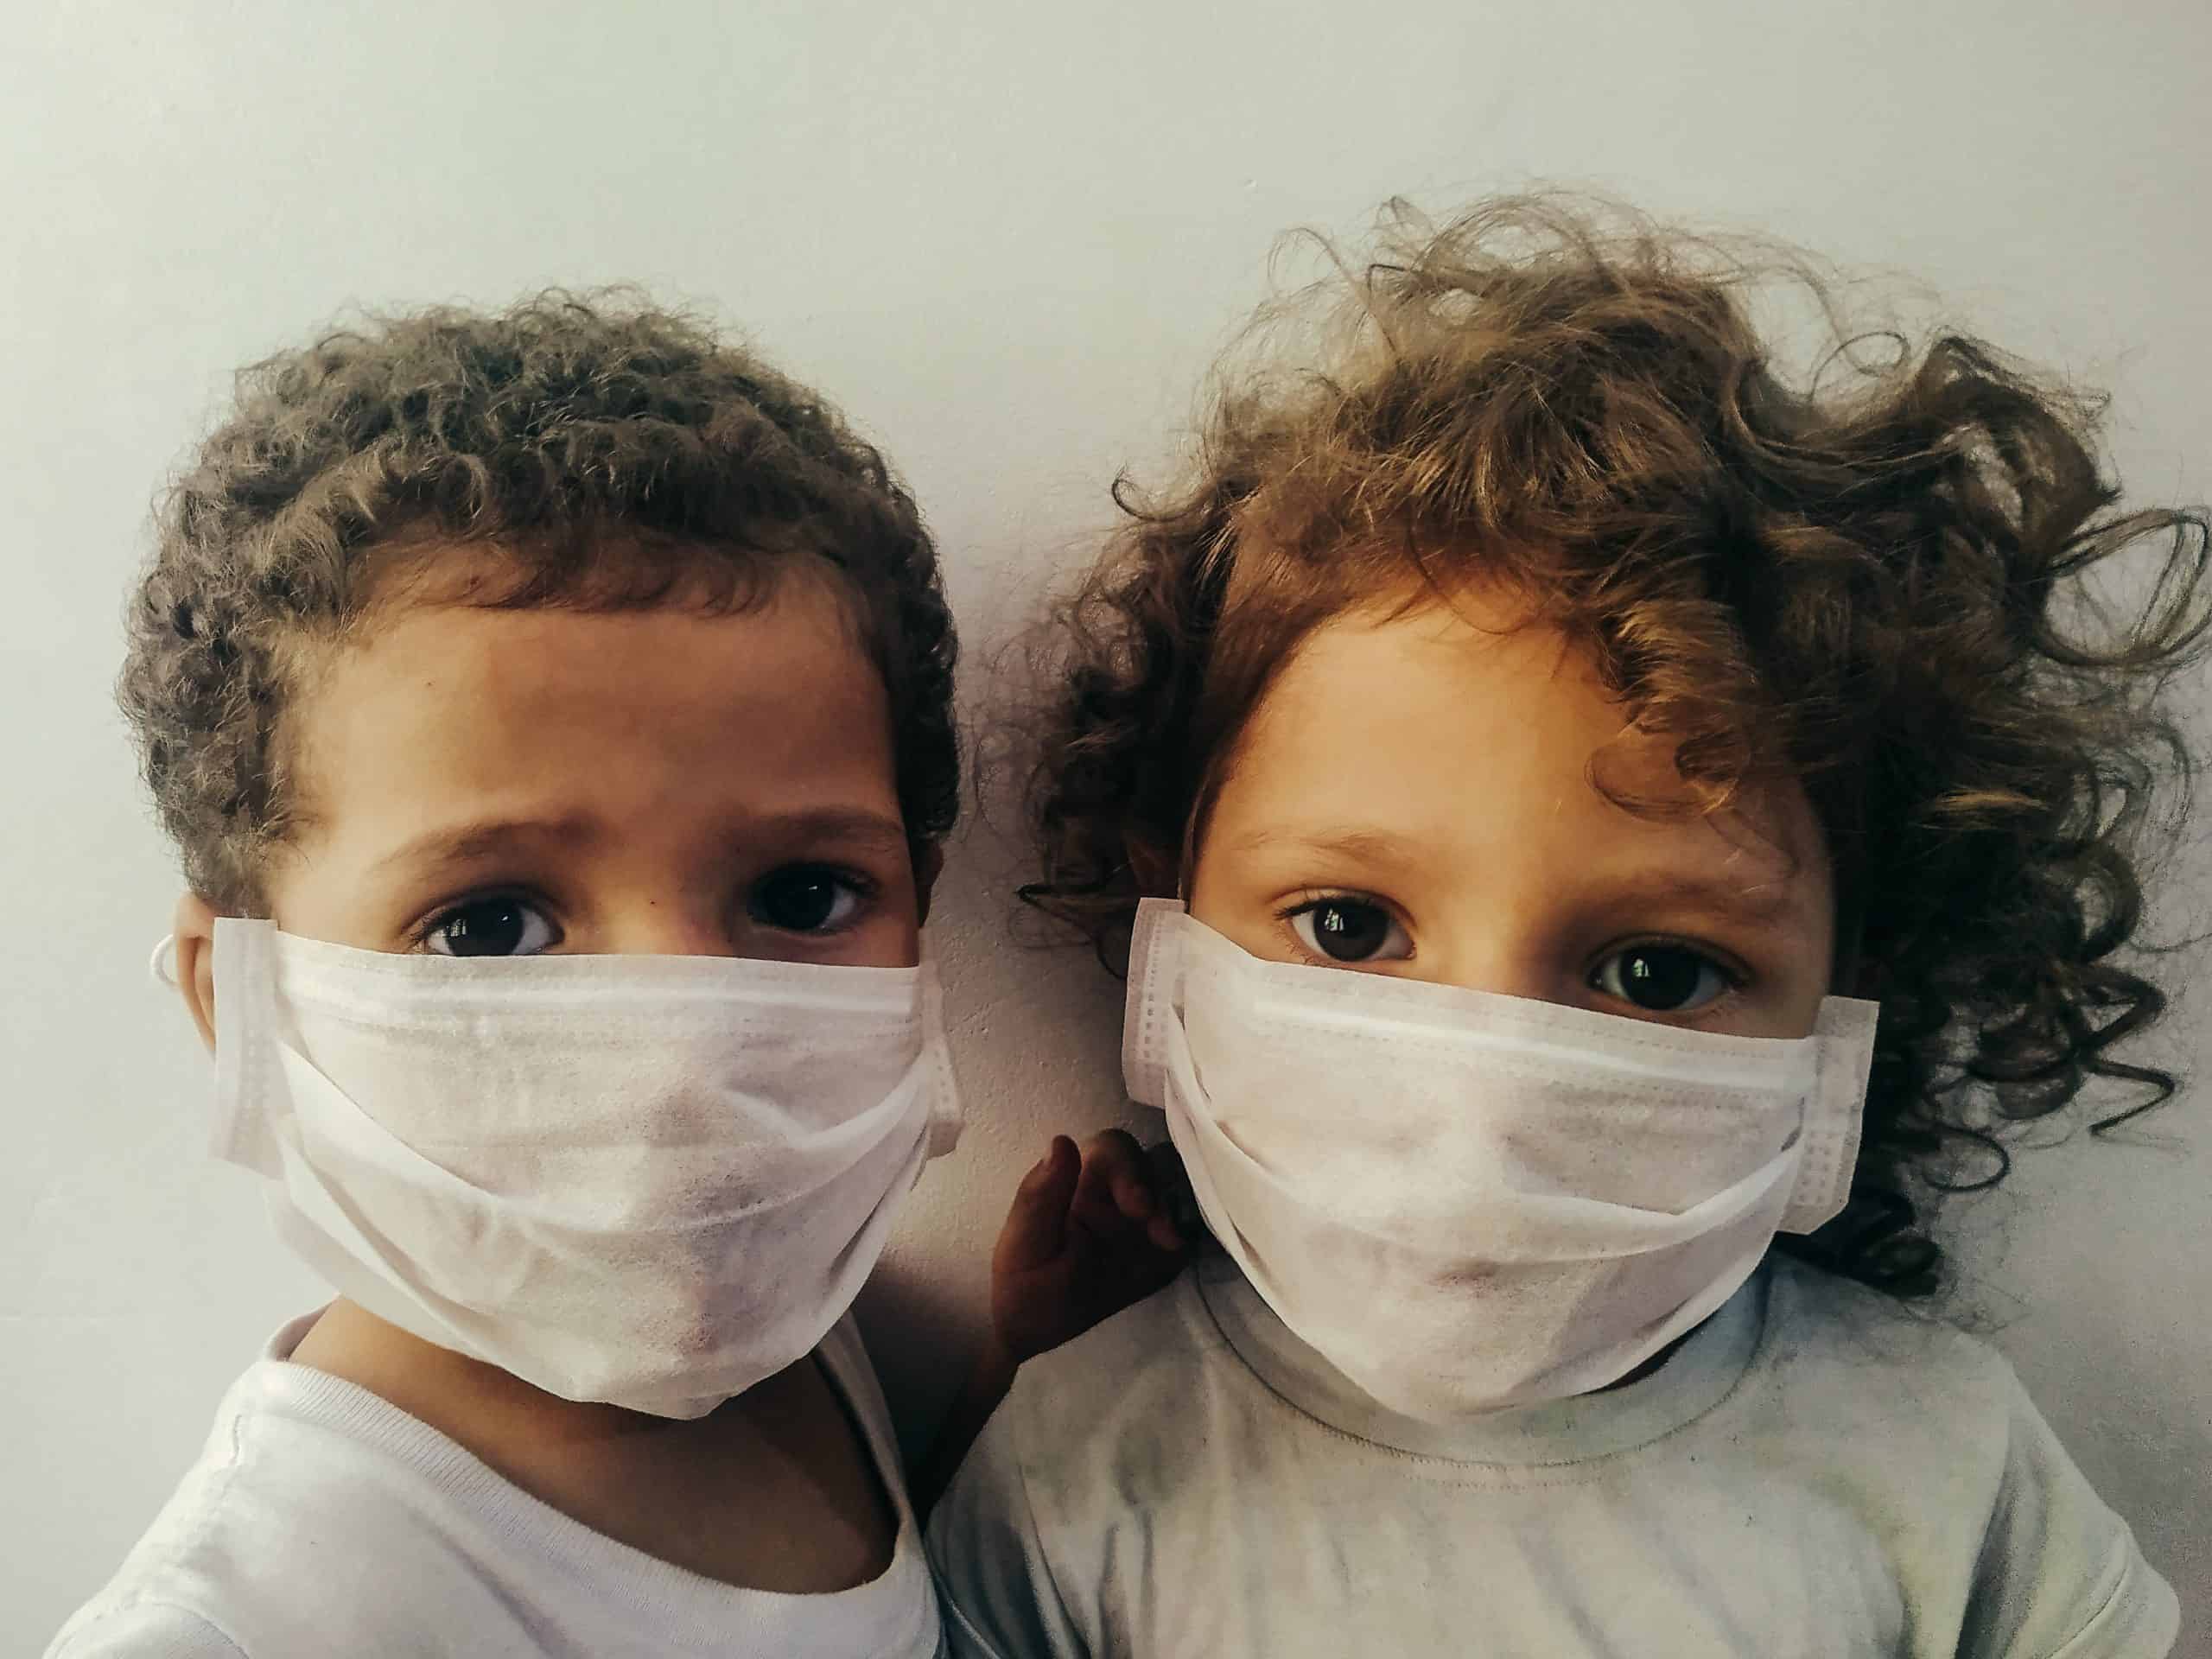 kids-wearing-surgical-masks-4027320